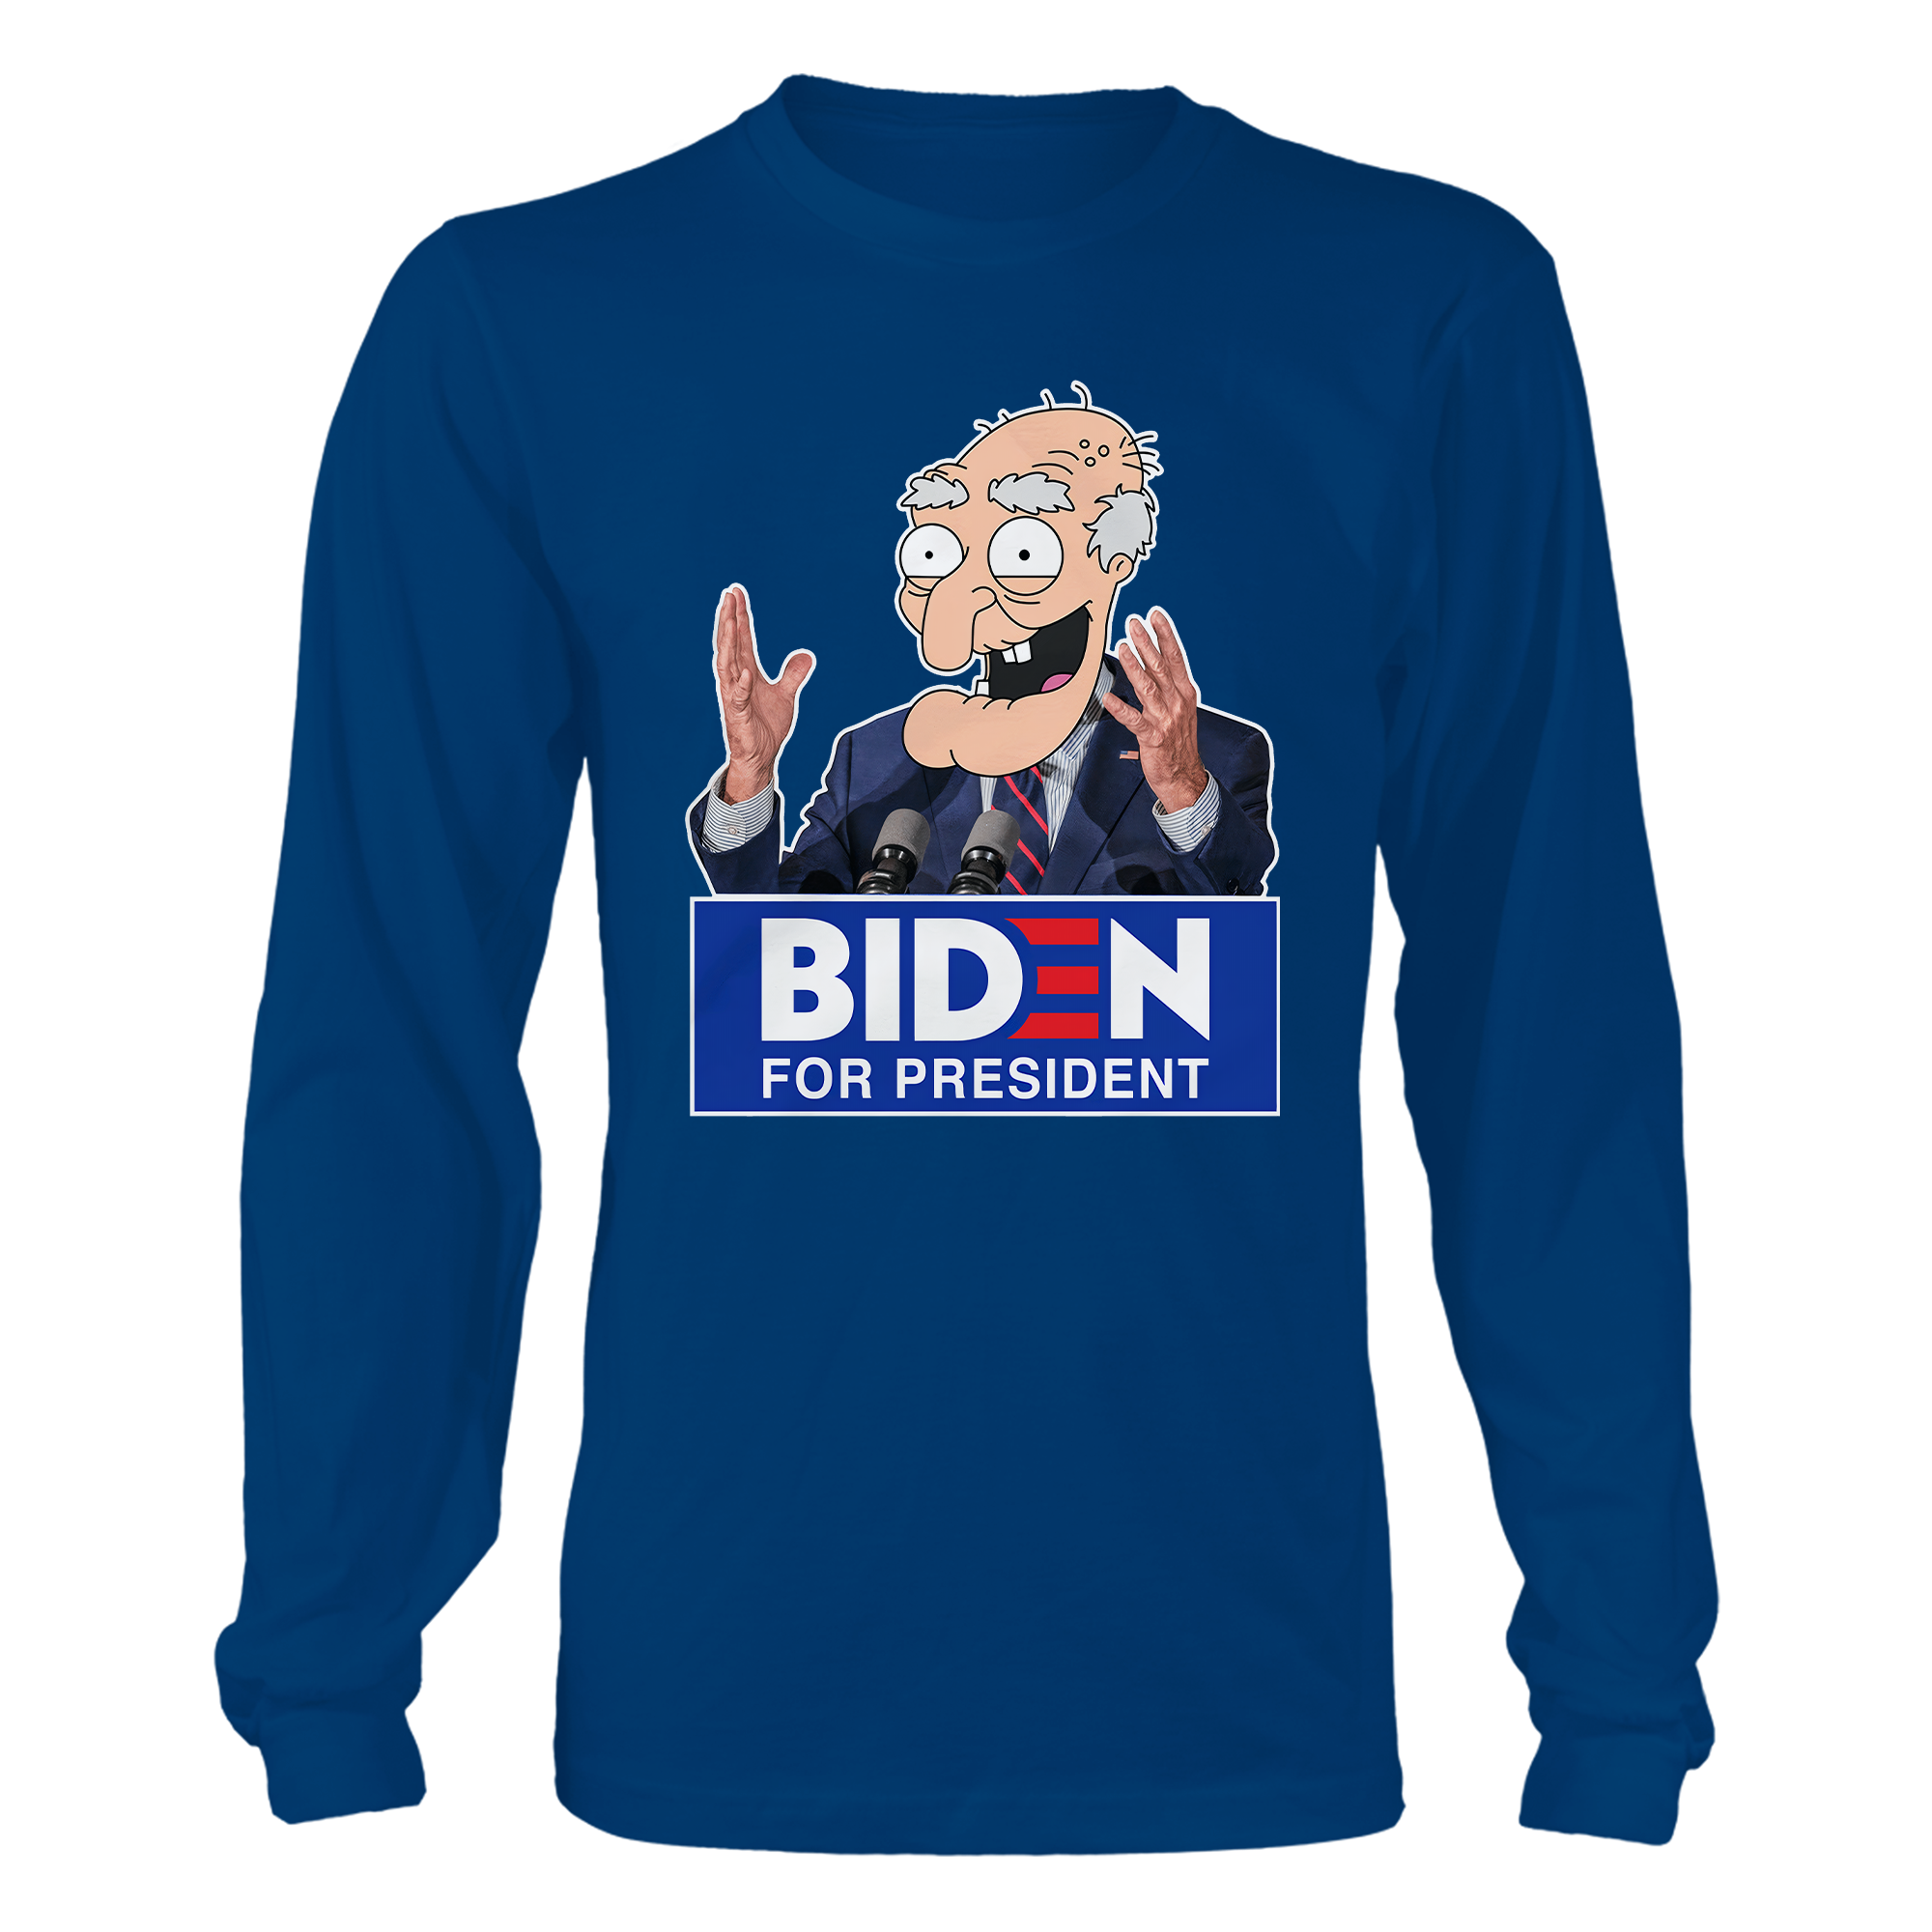 Biden For President T-Shirt - GB76